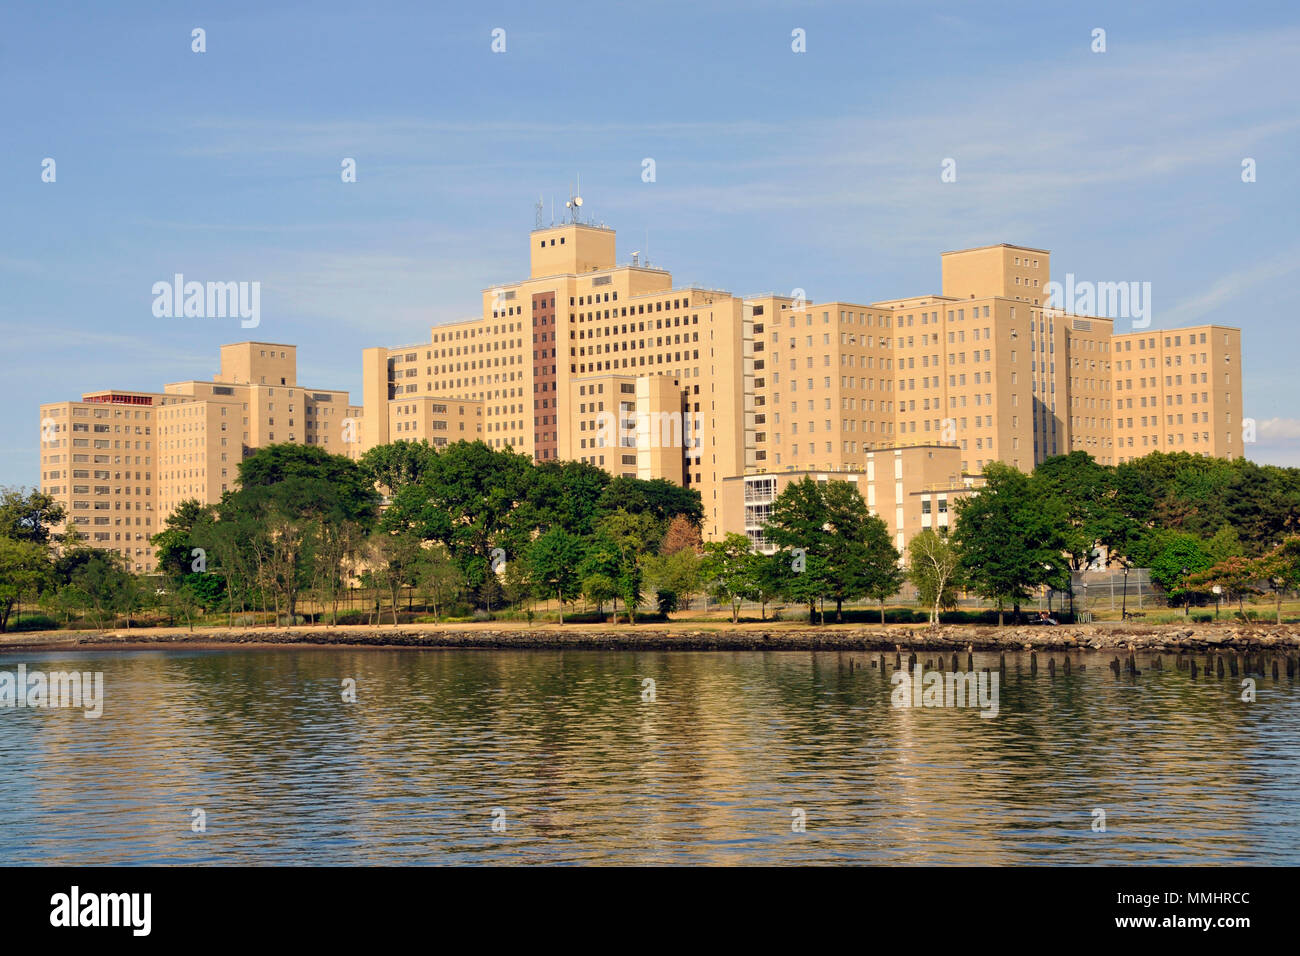 L'hôpital psychiatrique de Manhattan vu de l'Harlem River, New York City, New York, USA Banque D'Images